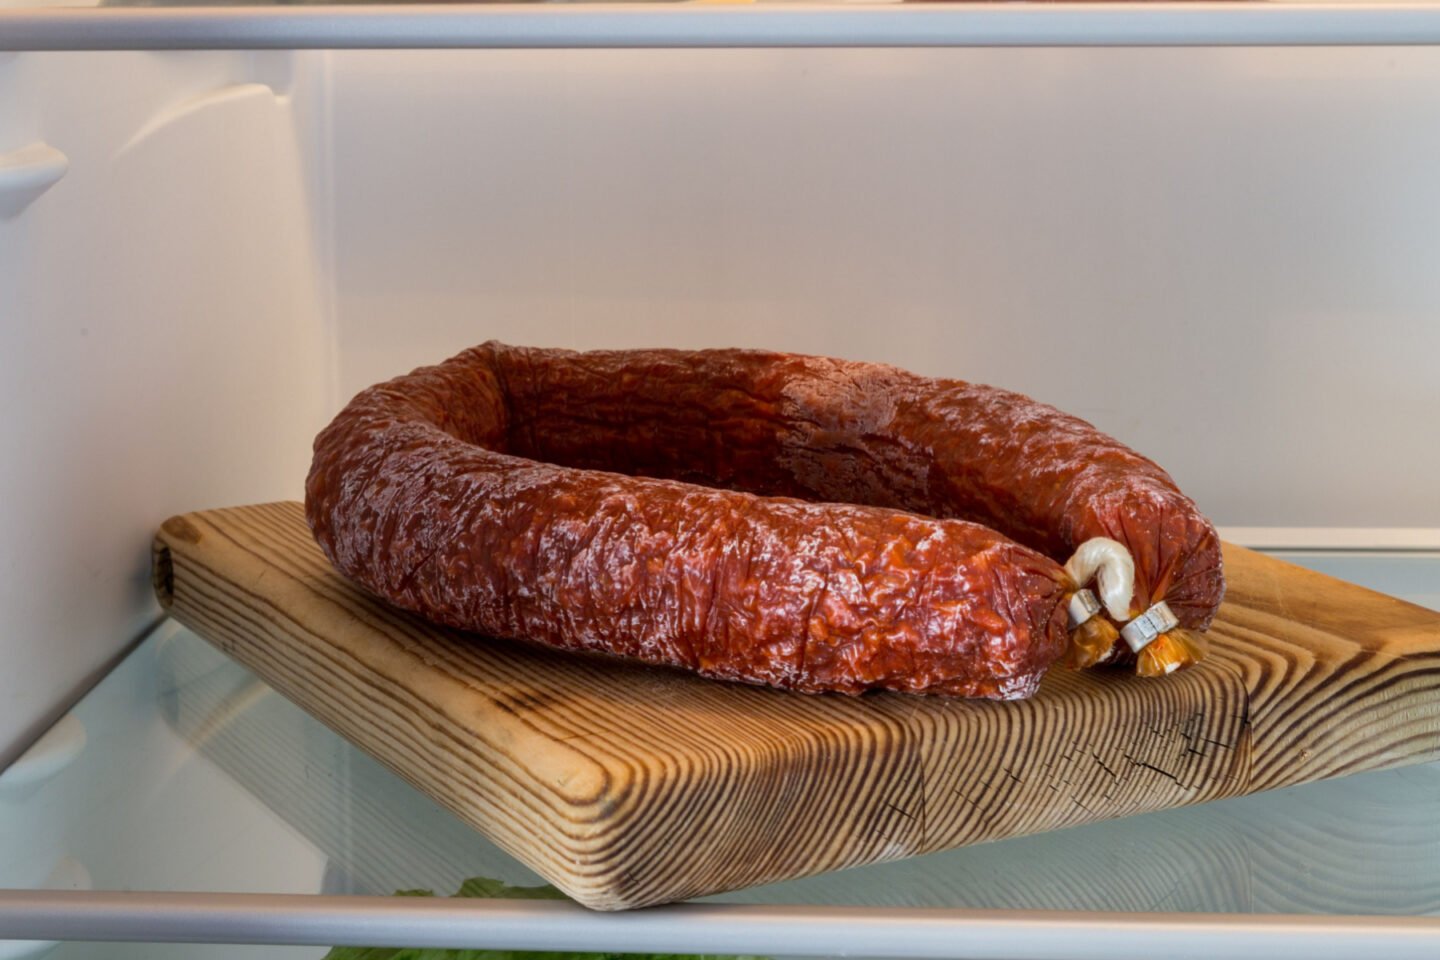 Spanish chorizo sausage in the fridge